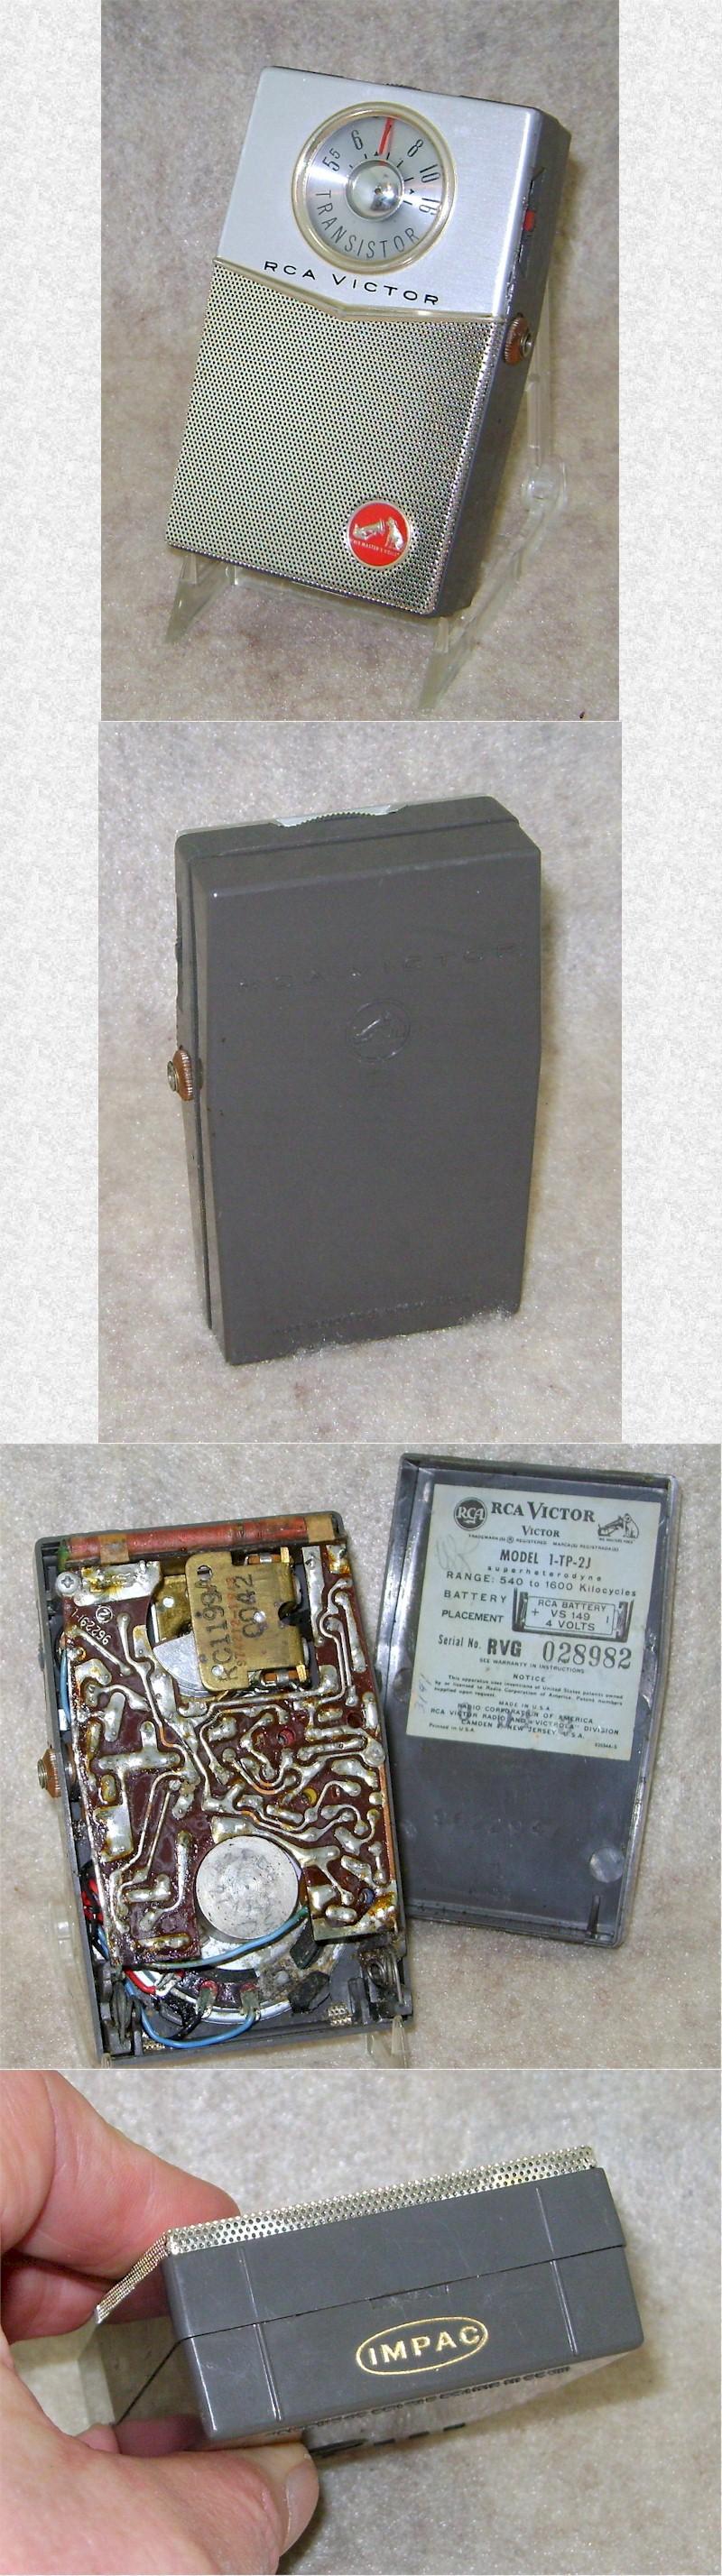 RCA 1-TP-2J Pocket Transistor